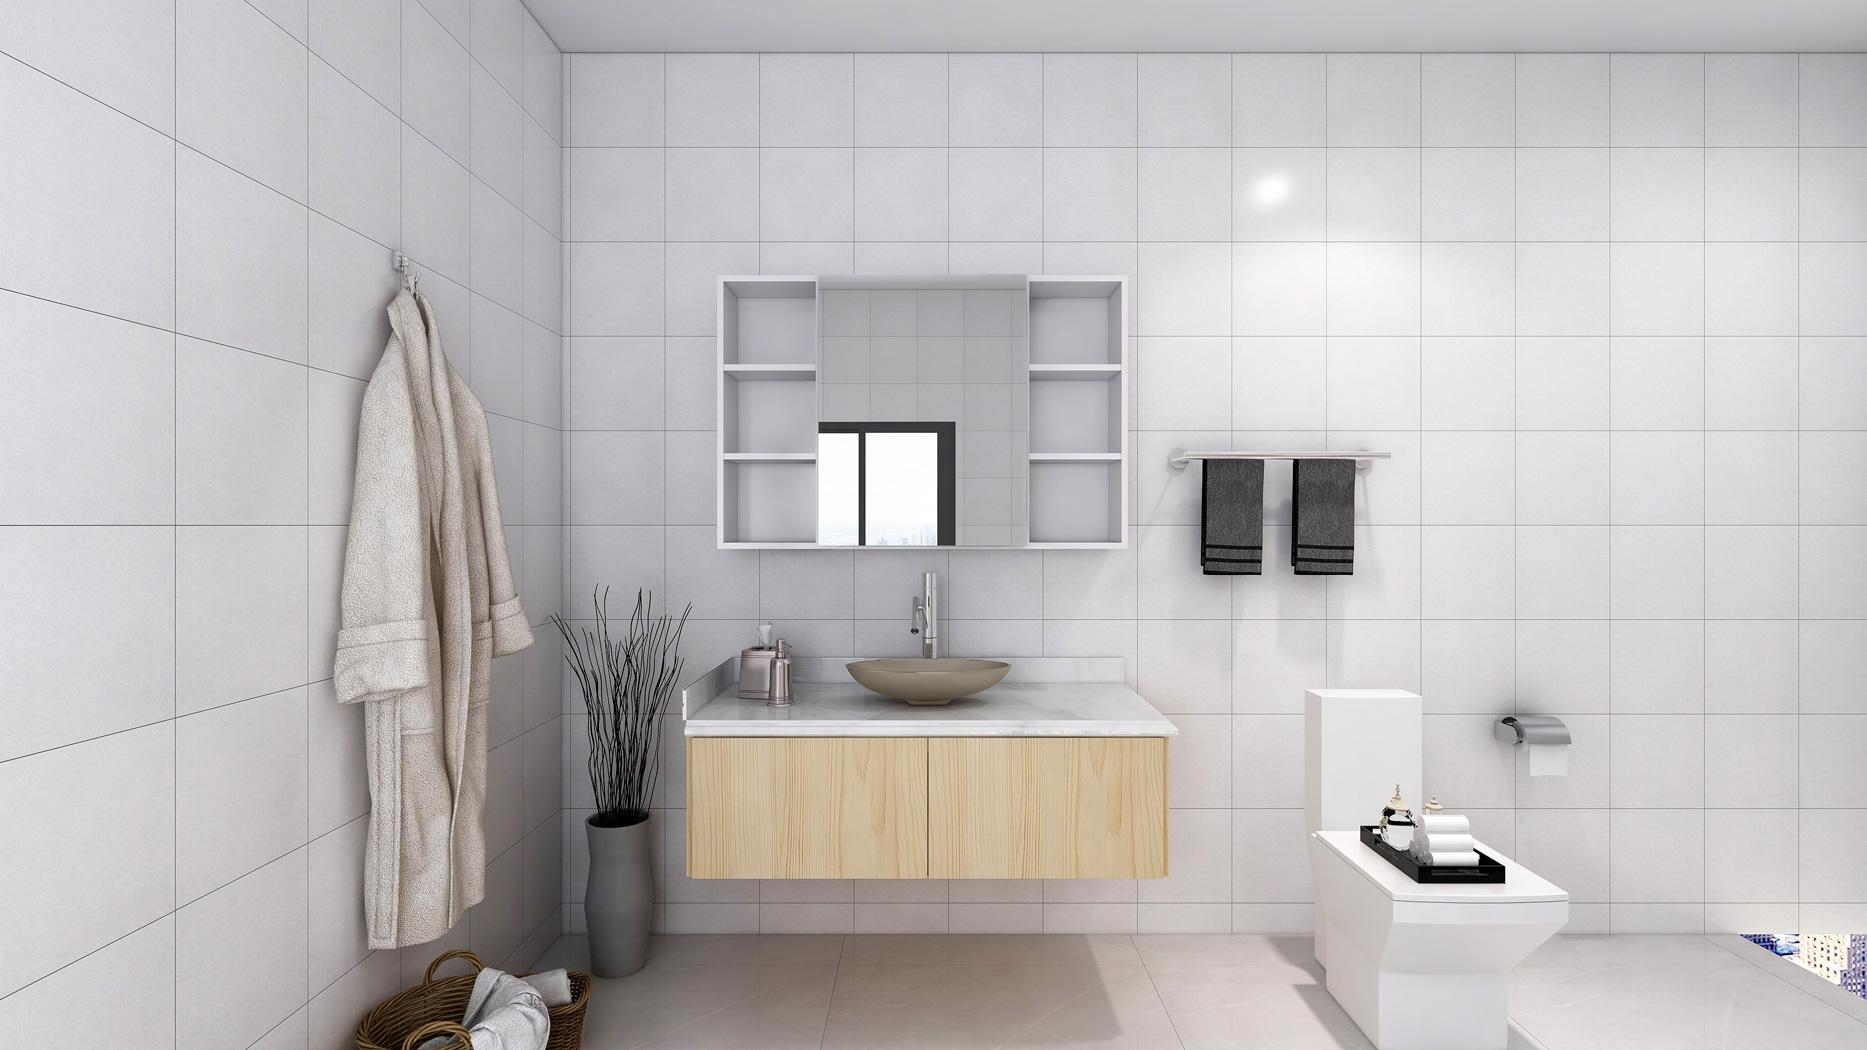 浴室柜防潮有重点 关注材料和内部空间